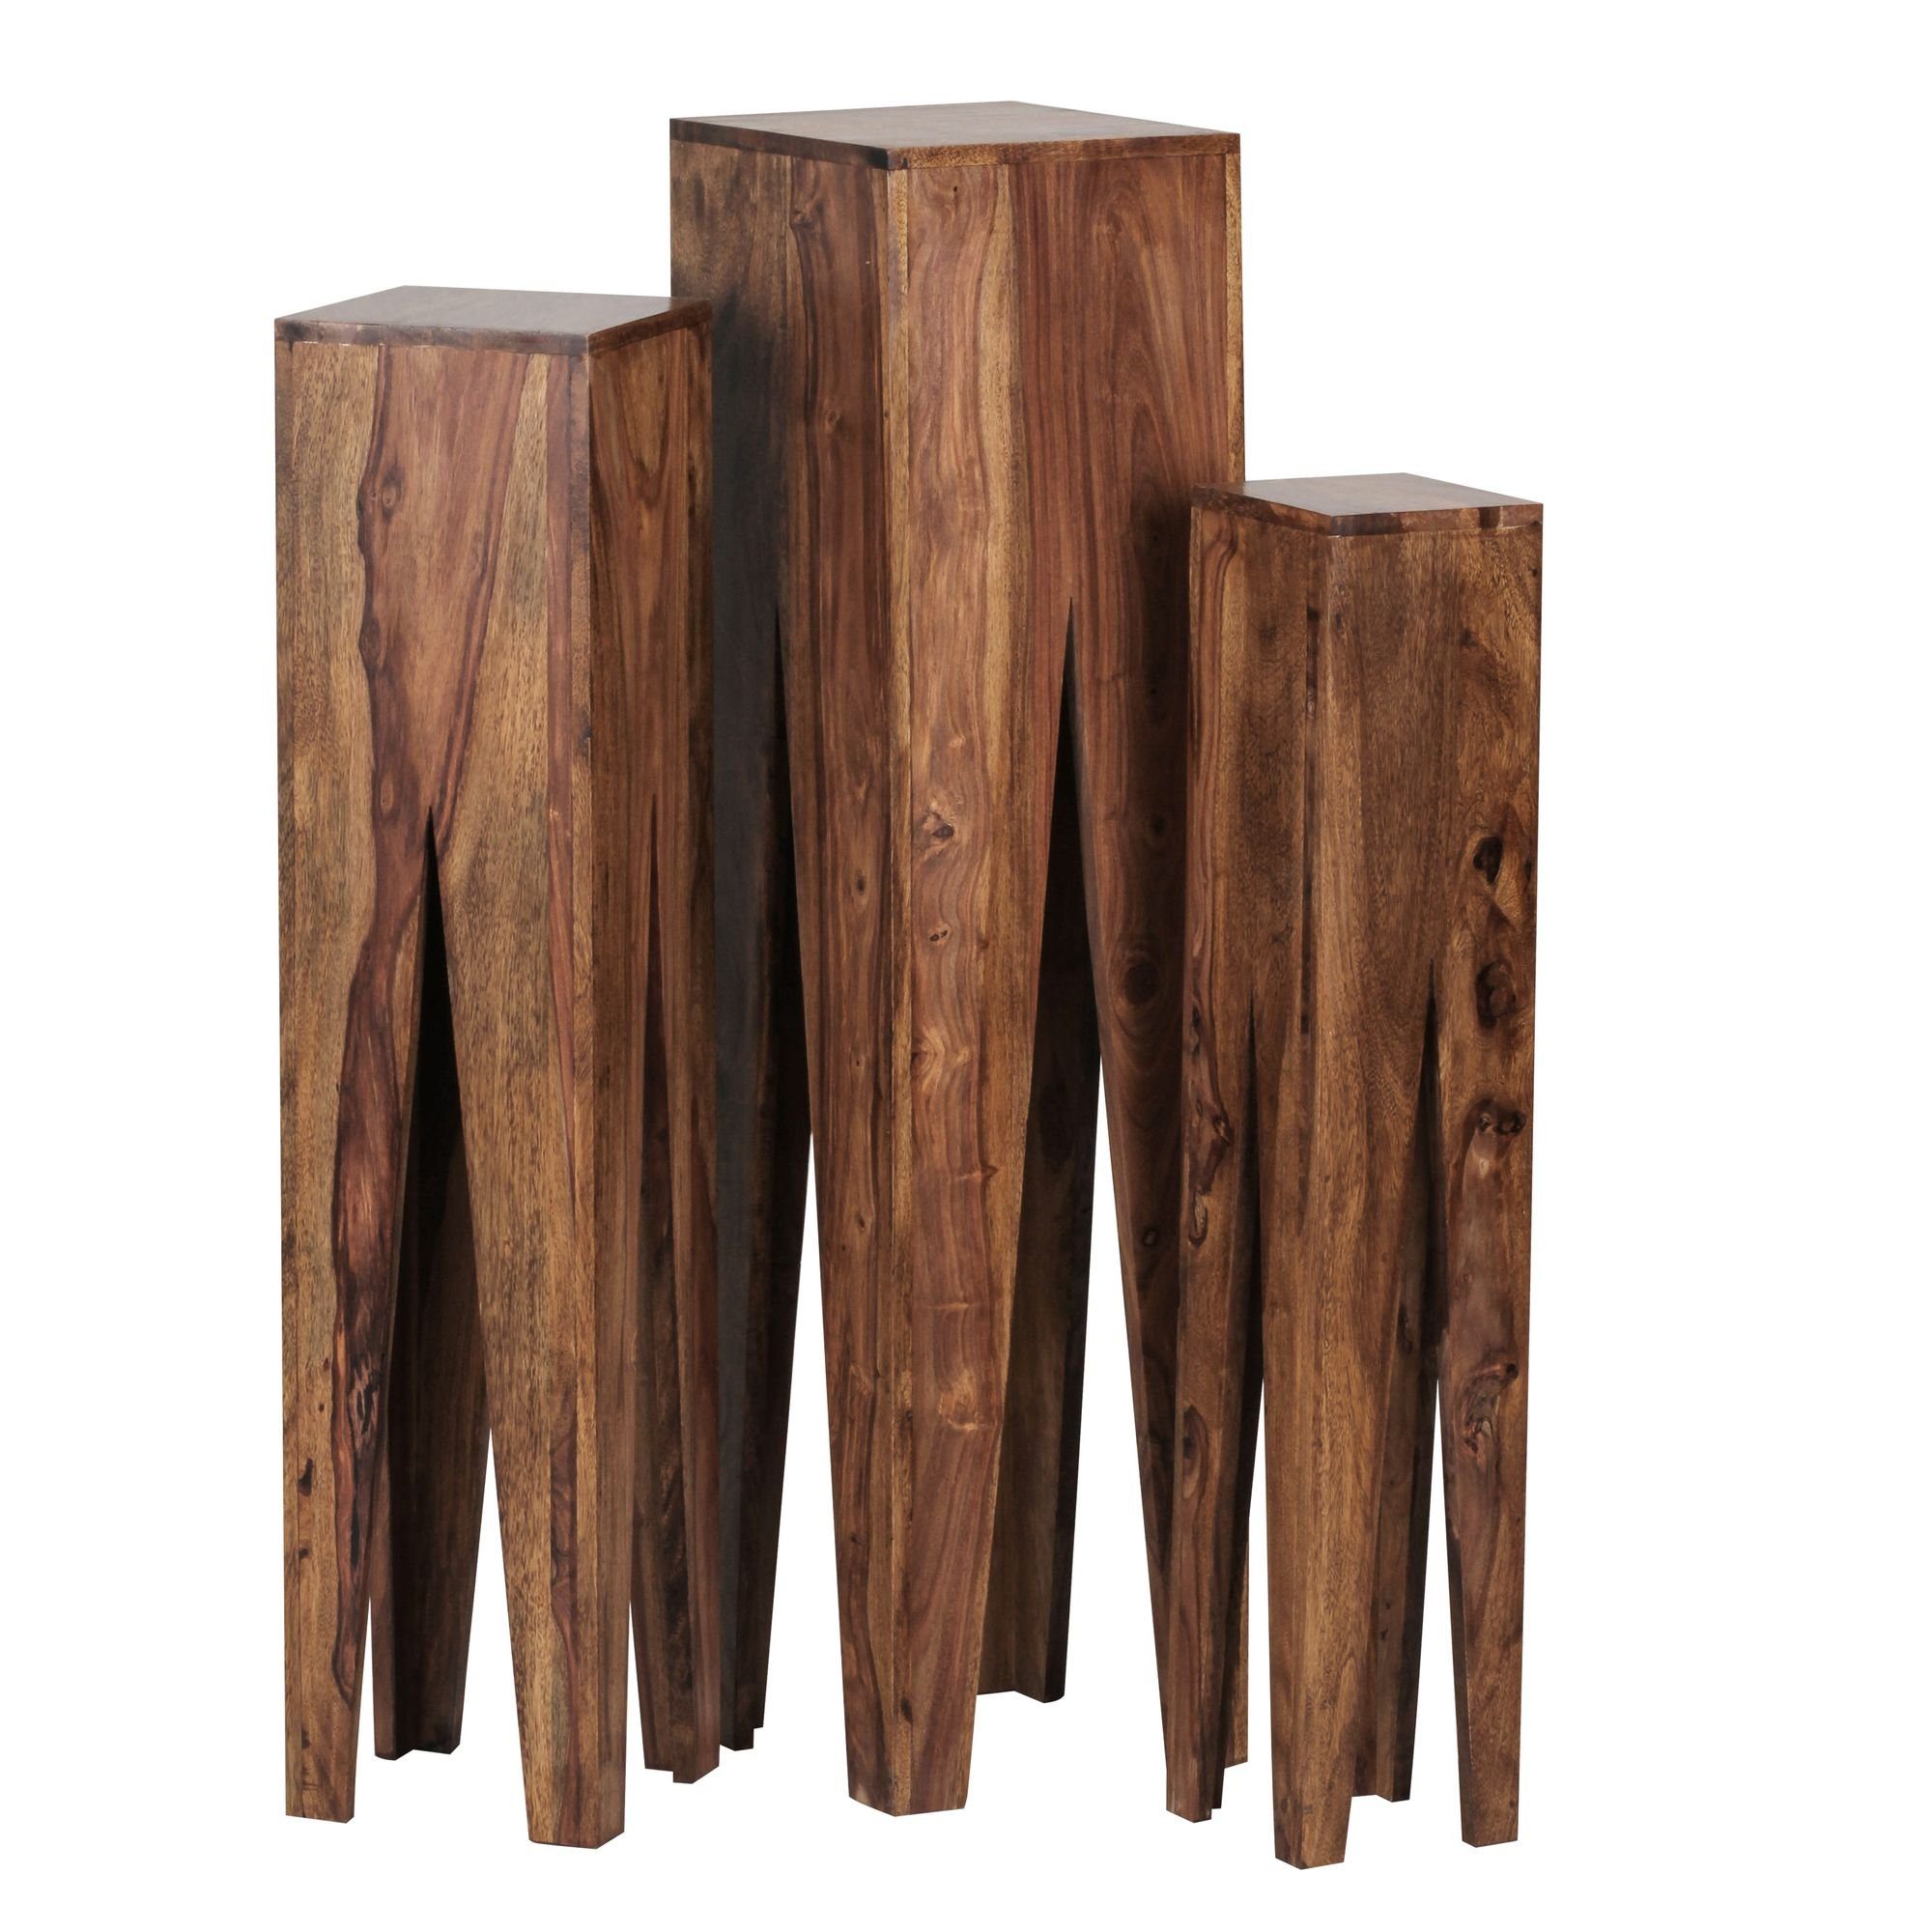 KADIMA | Braun | Ambiente DESIGN Giraffenbein-Beistelltischset: Braun Rustikales Braun Massivholz Satztisch mit